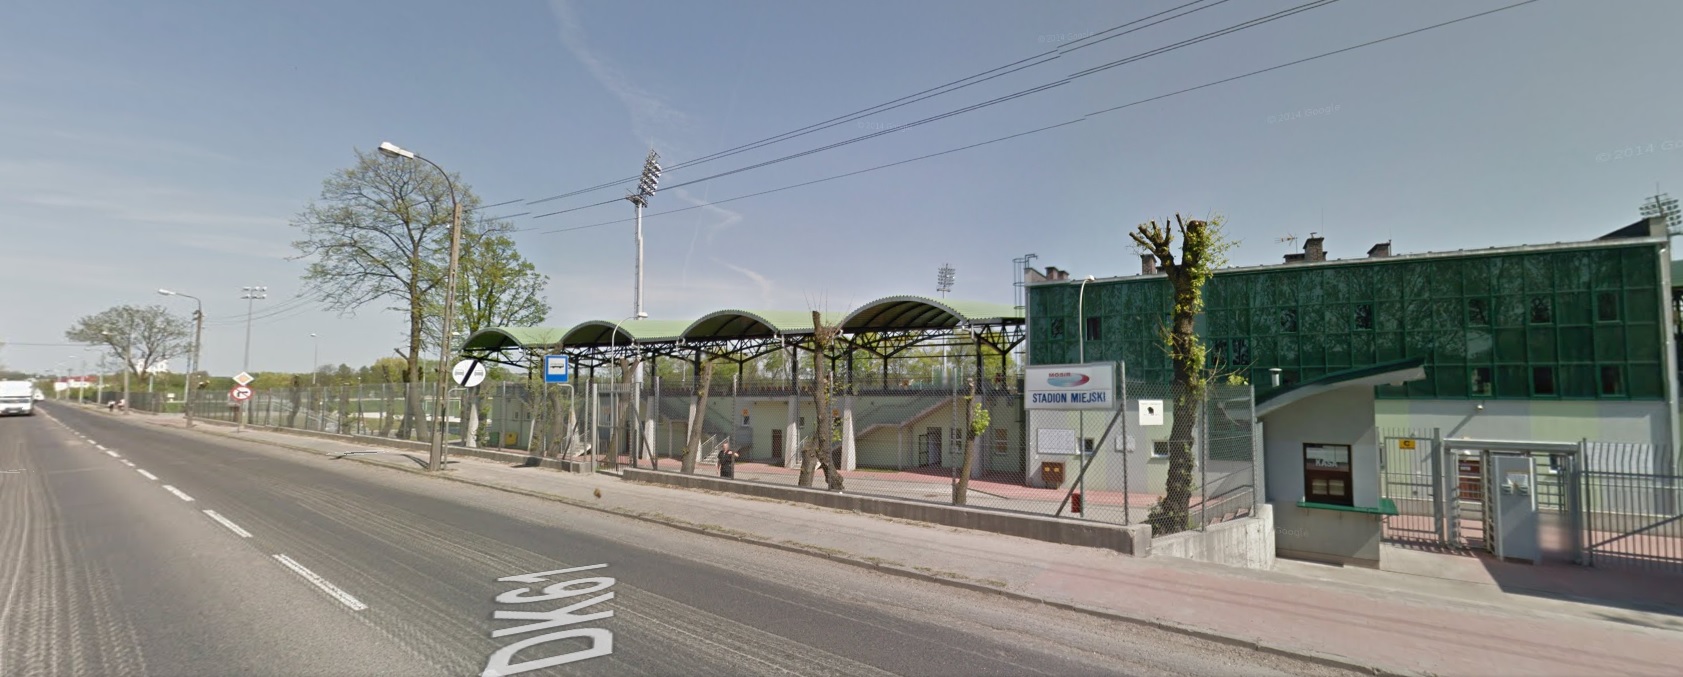 zdjęcie google map przedstyawiające ulicę Zjazd, w tle ogrodzenie i boisko stadionu